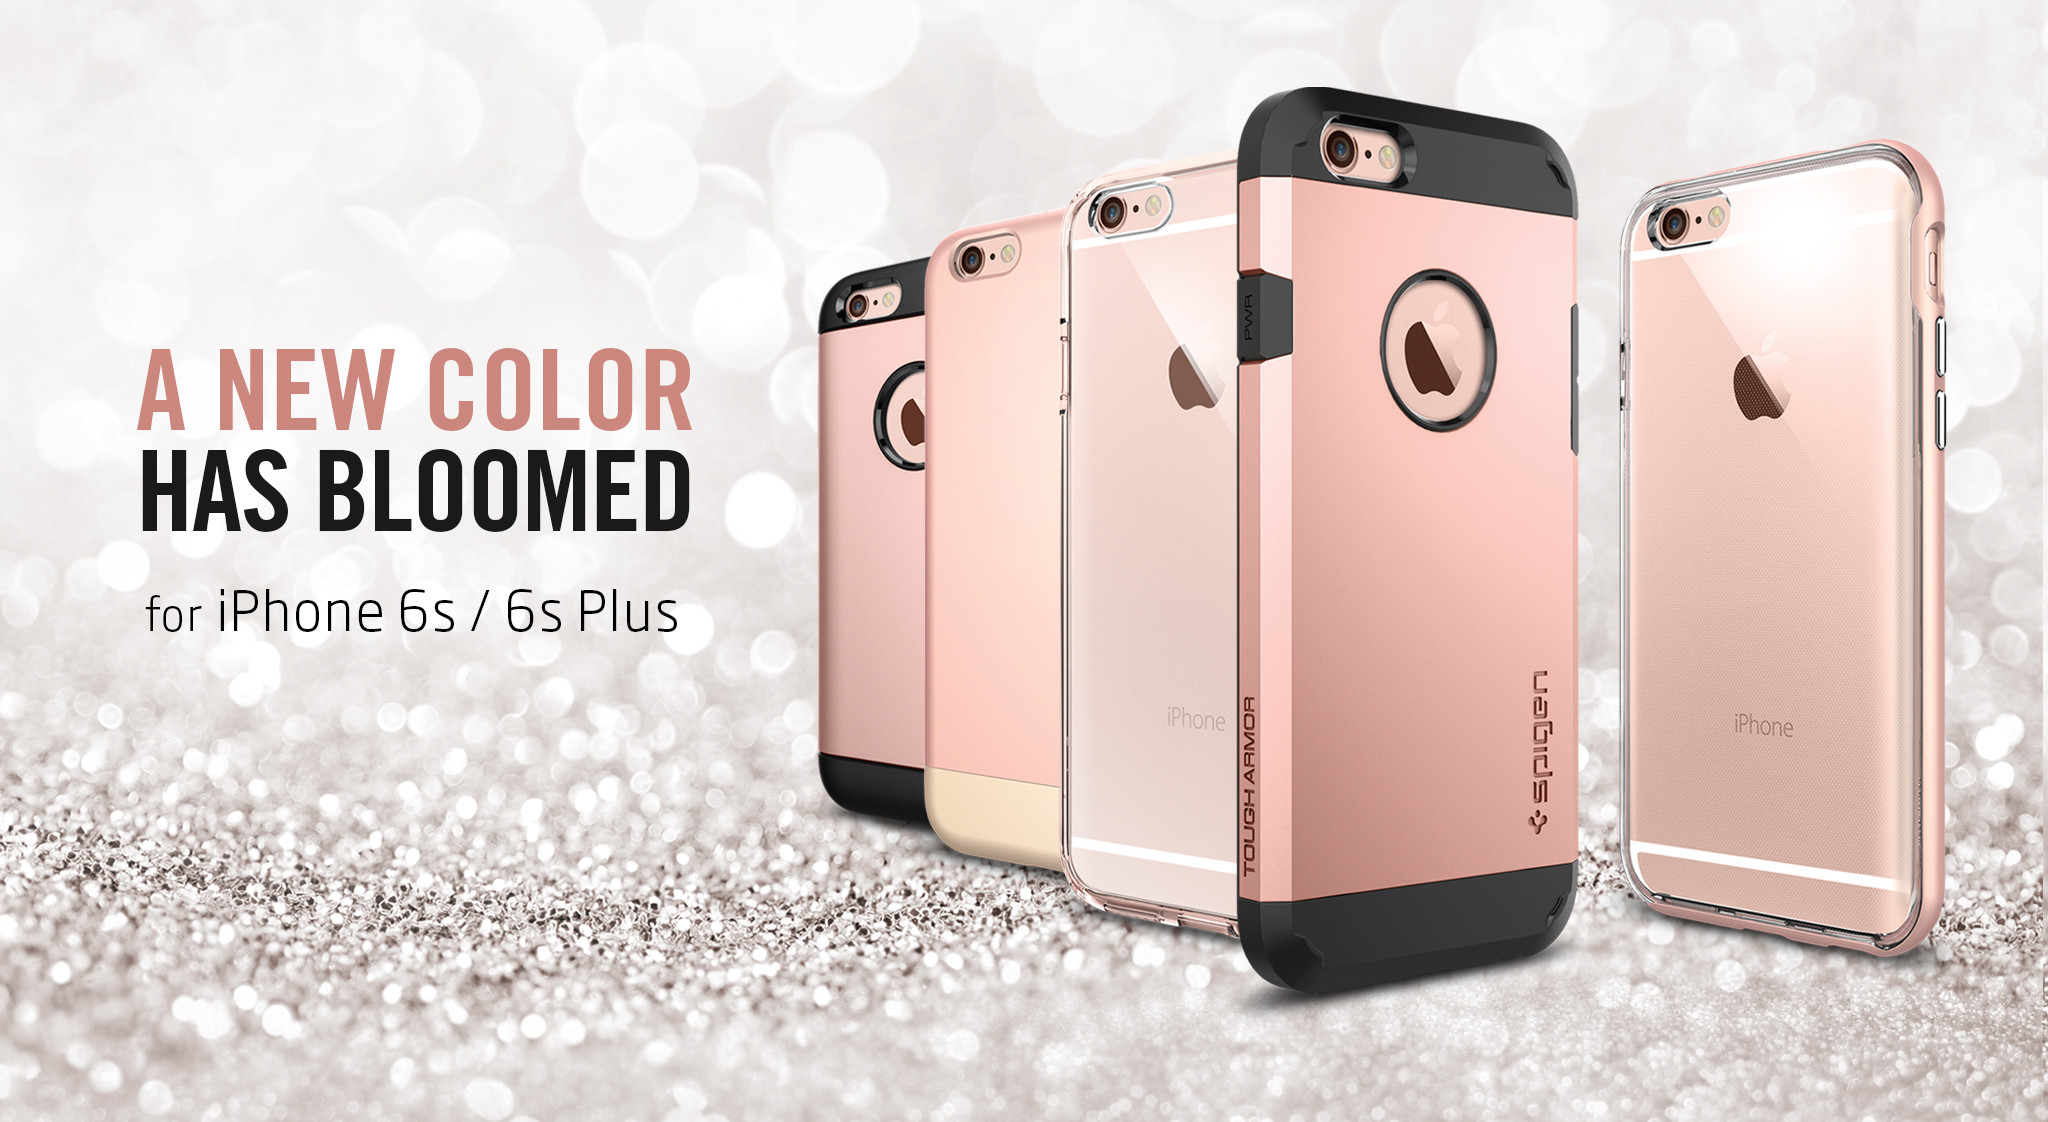 シュピゲンジャパン Iphone 6s 6s Plus Rose Gold発売記念 ローズゴールド ケース最大35 Offセール開催中 ファイブスターエレメンツ株式会社のプレスリリース